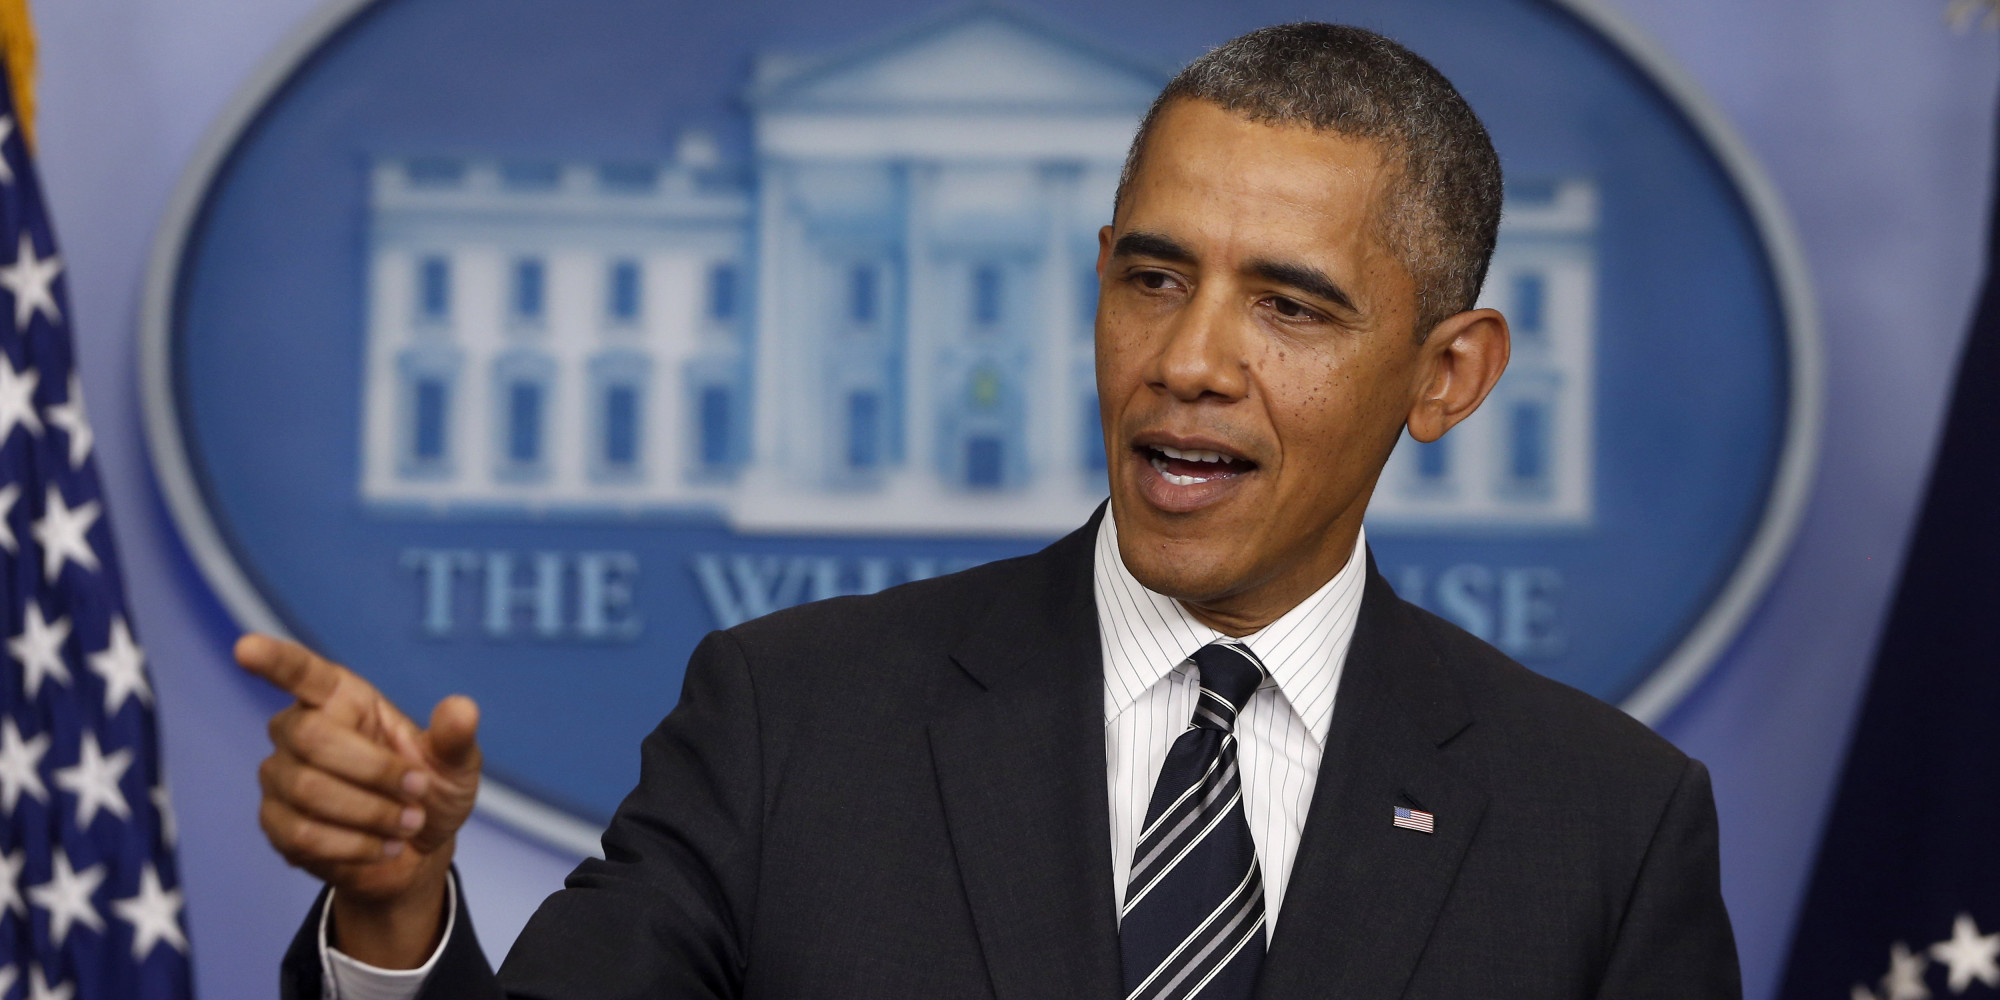 اوباما: امیدوارم توافق آغاز عصر تازه ای در روابط آمریکا و ایران باشد